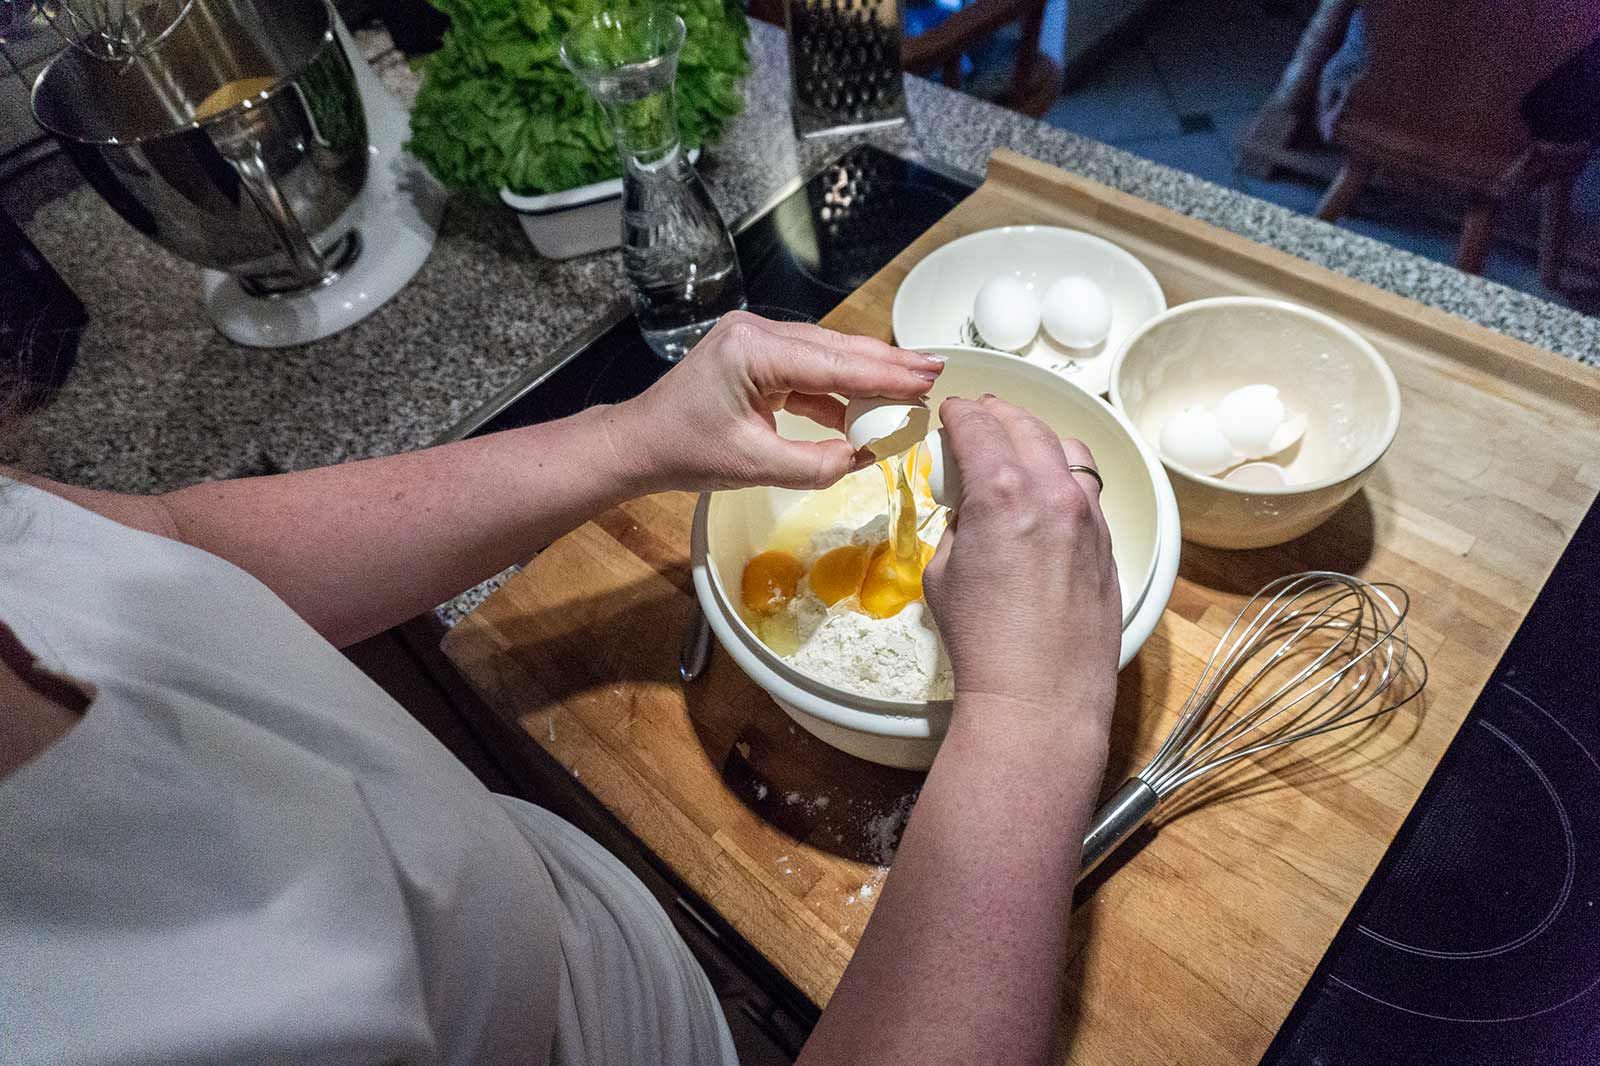 Zur Zubereitung des Allgäuer Kässpatzen Teigs werden Mehl, Salz und Eier in eine Schüssel gegeben und verrührt. Nach und nach wird Wasser hinzu gegen bis eine zähflüssige Masse entsteht.